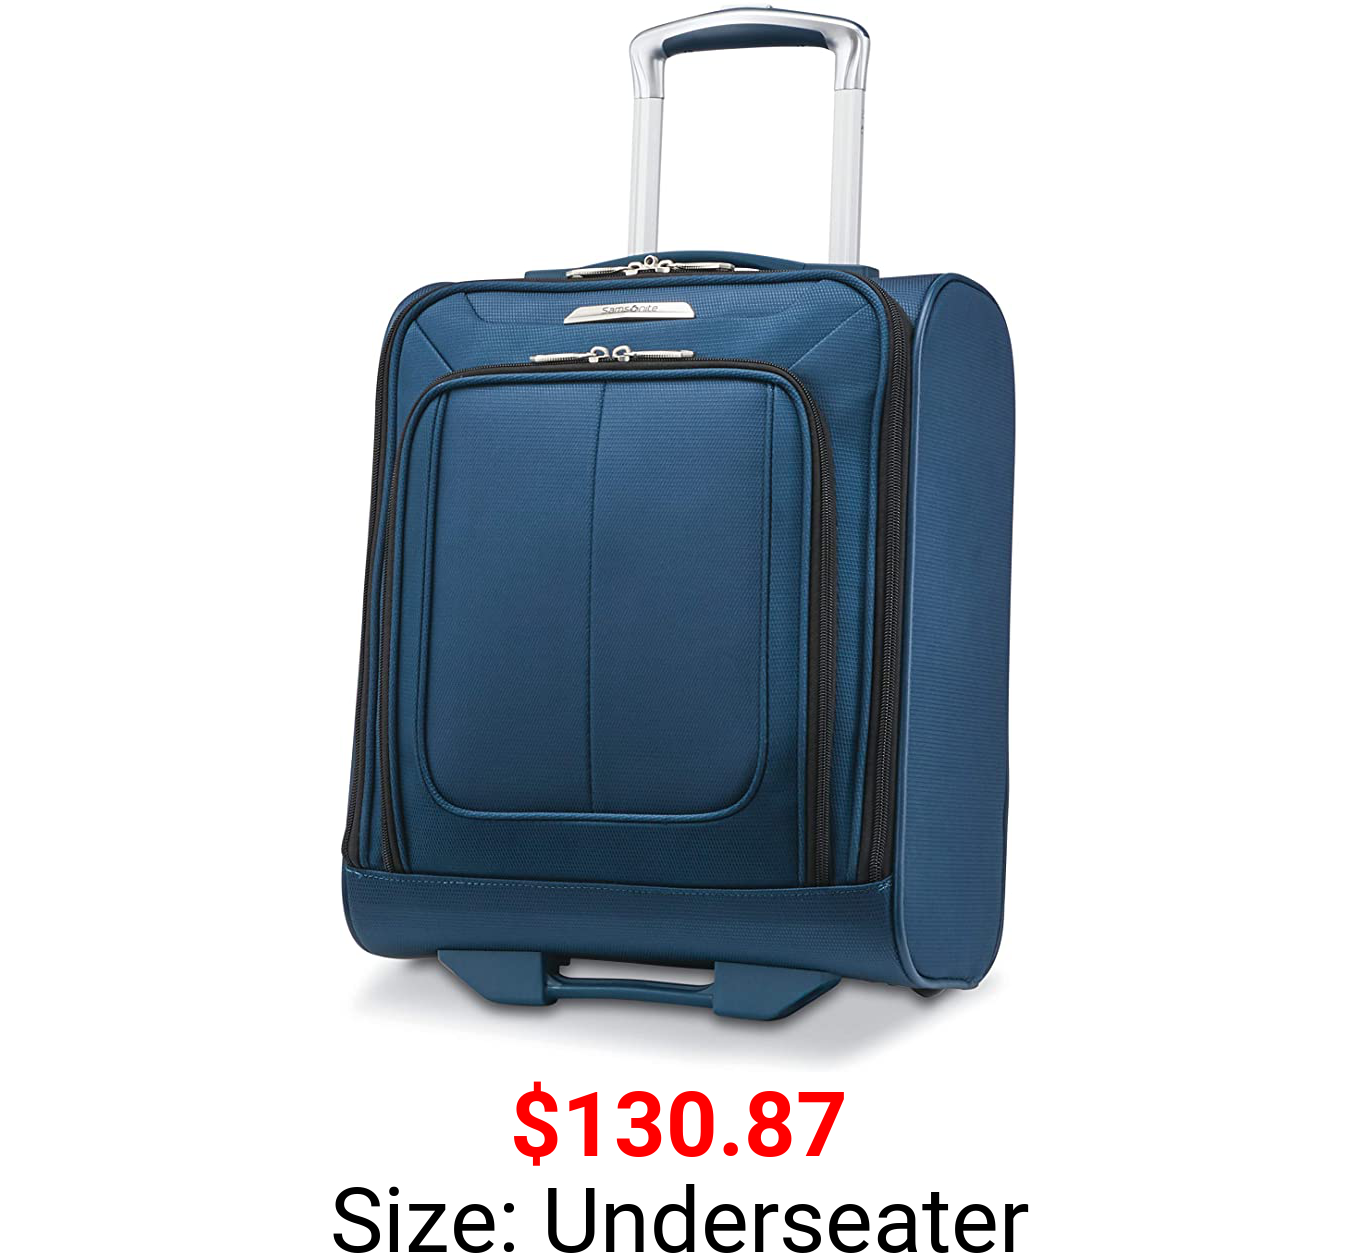 Samsonite Solyte DLX Softside Luggage, Mediterranean Blue, Underseater